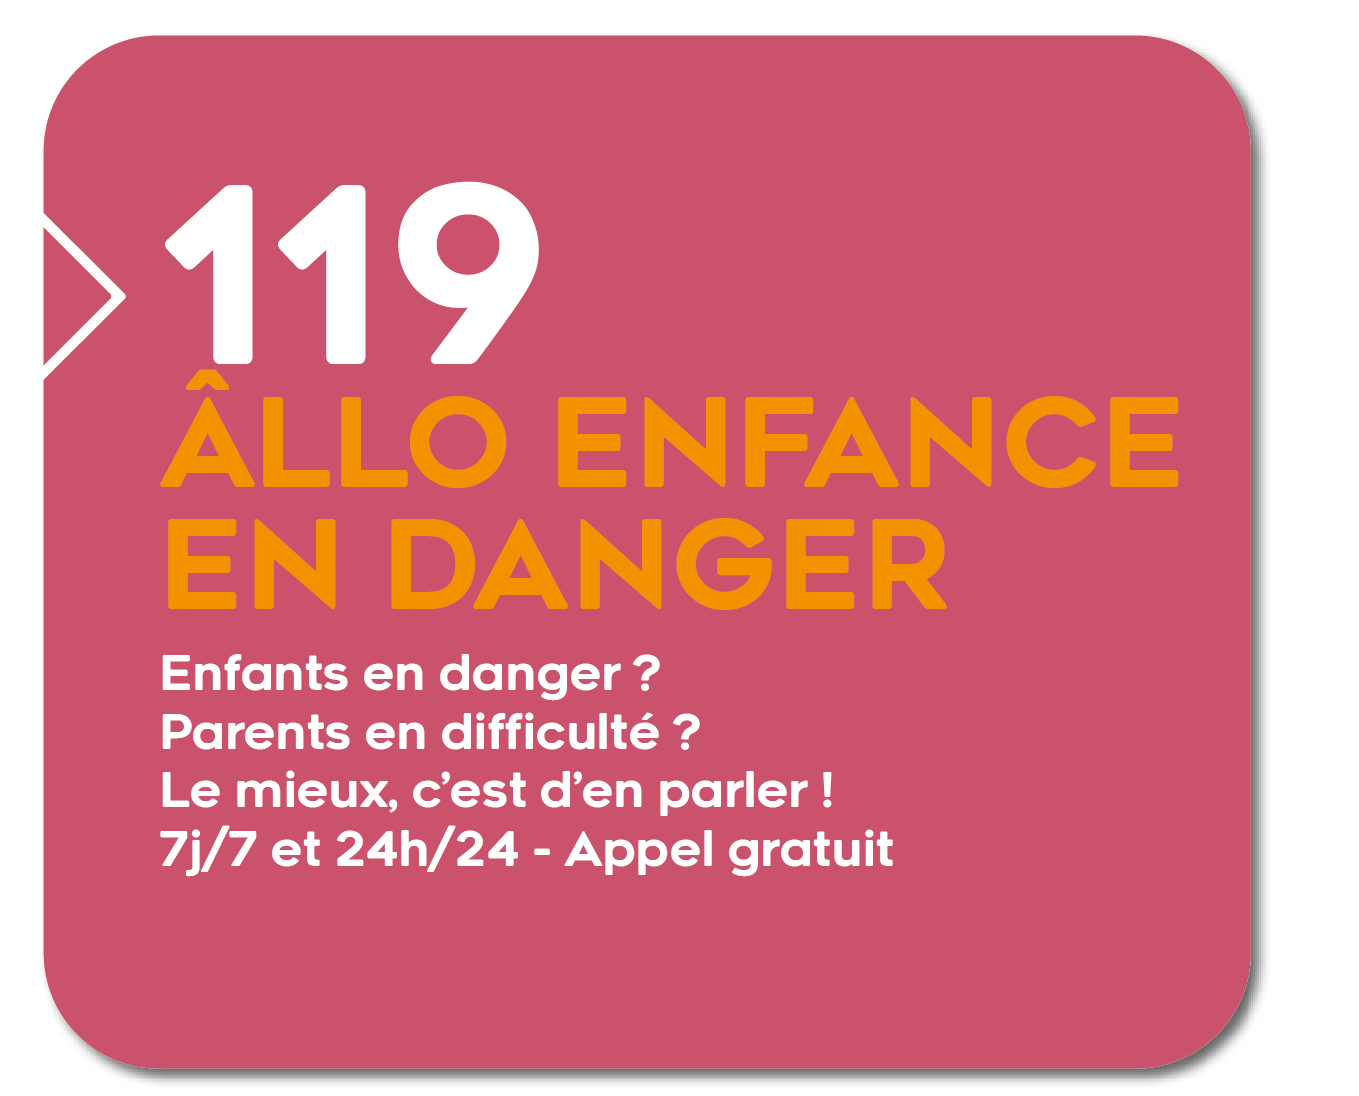 119 Enfance en danger